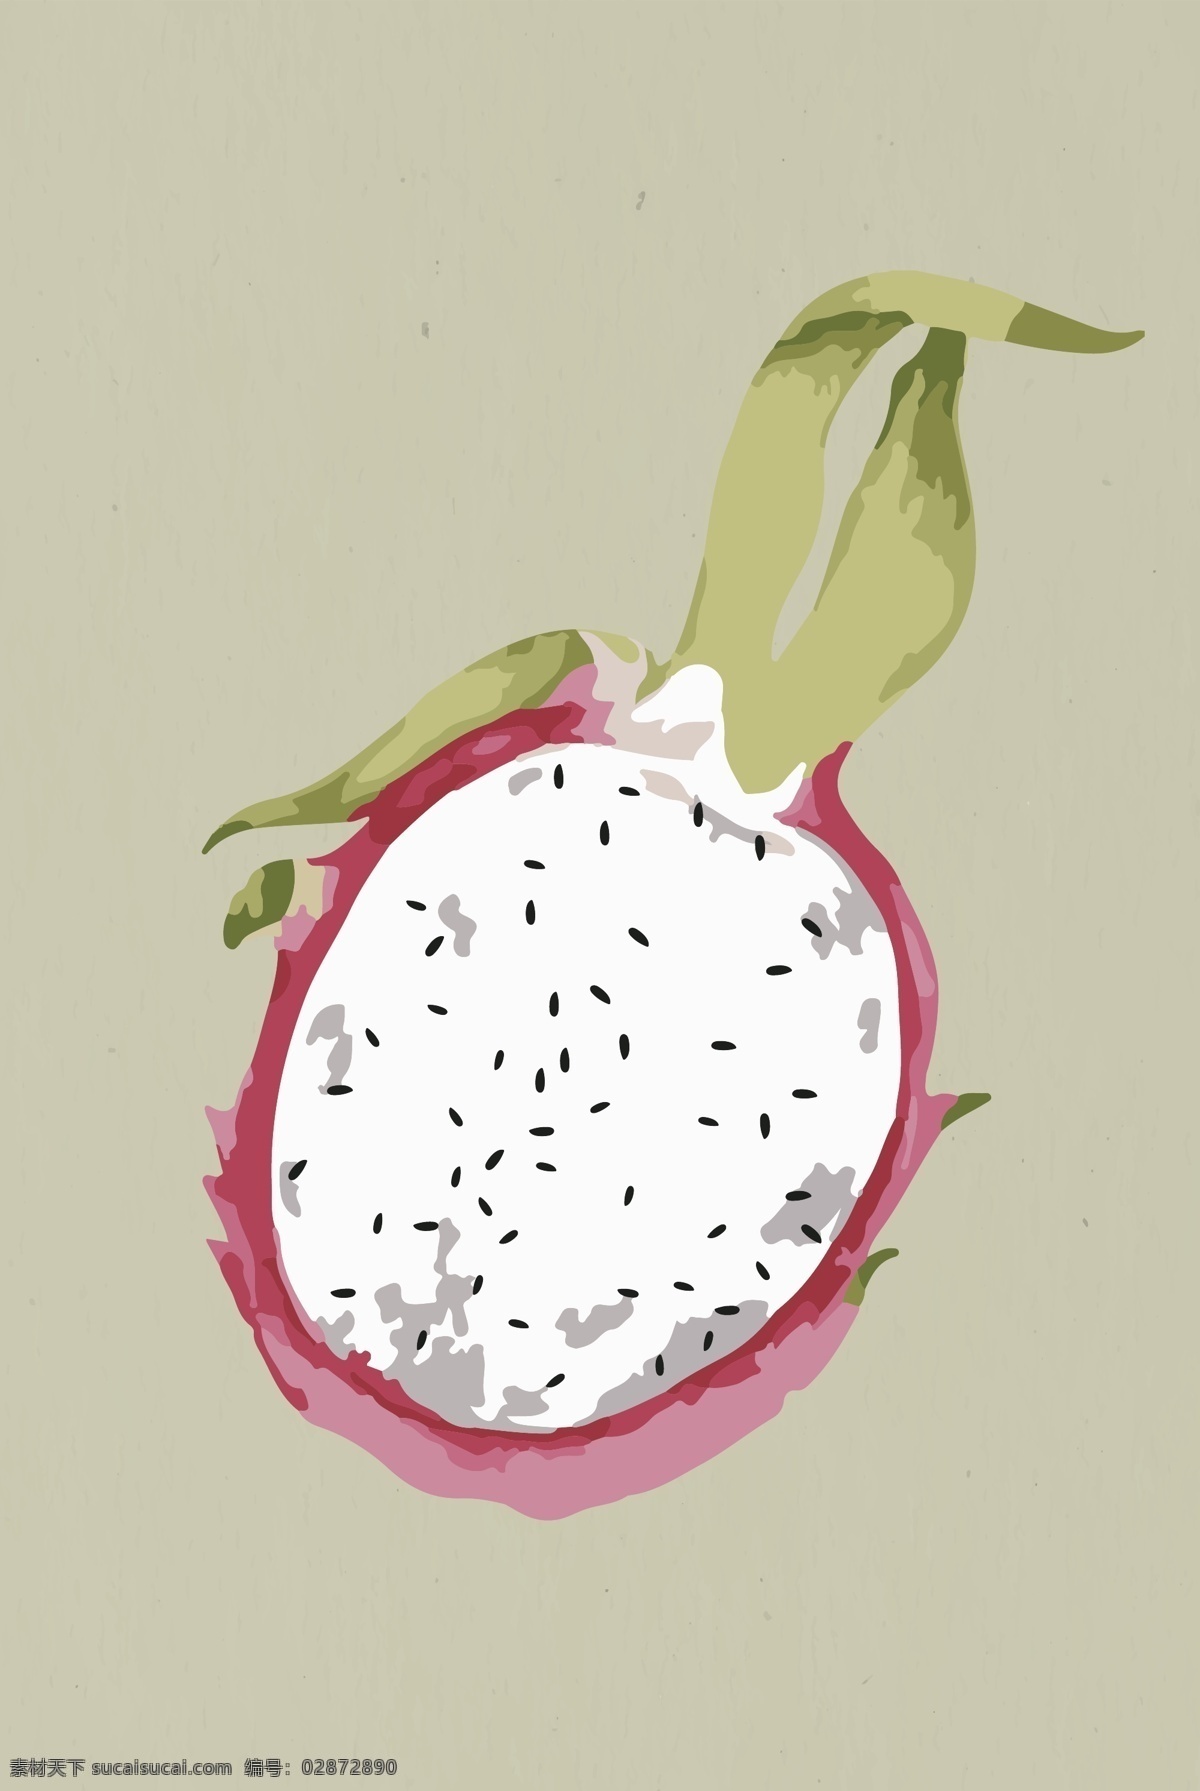 矢量火龙果 卡通火龙果 手绘火龙果 火龙果插画 火龙果背景 食物 生物世界 水果